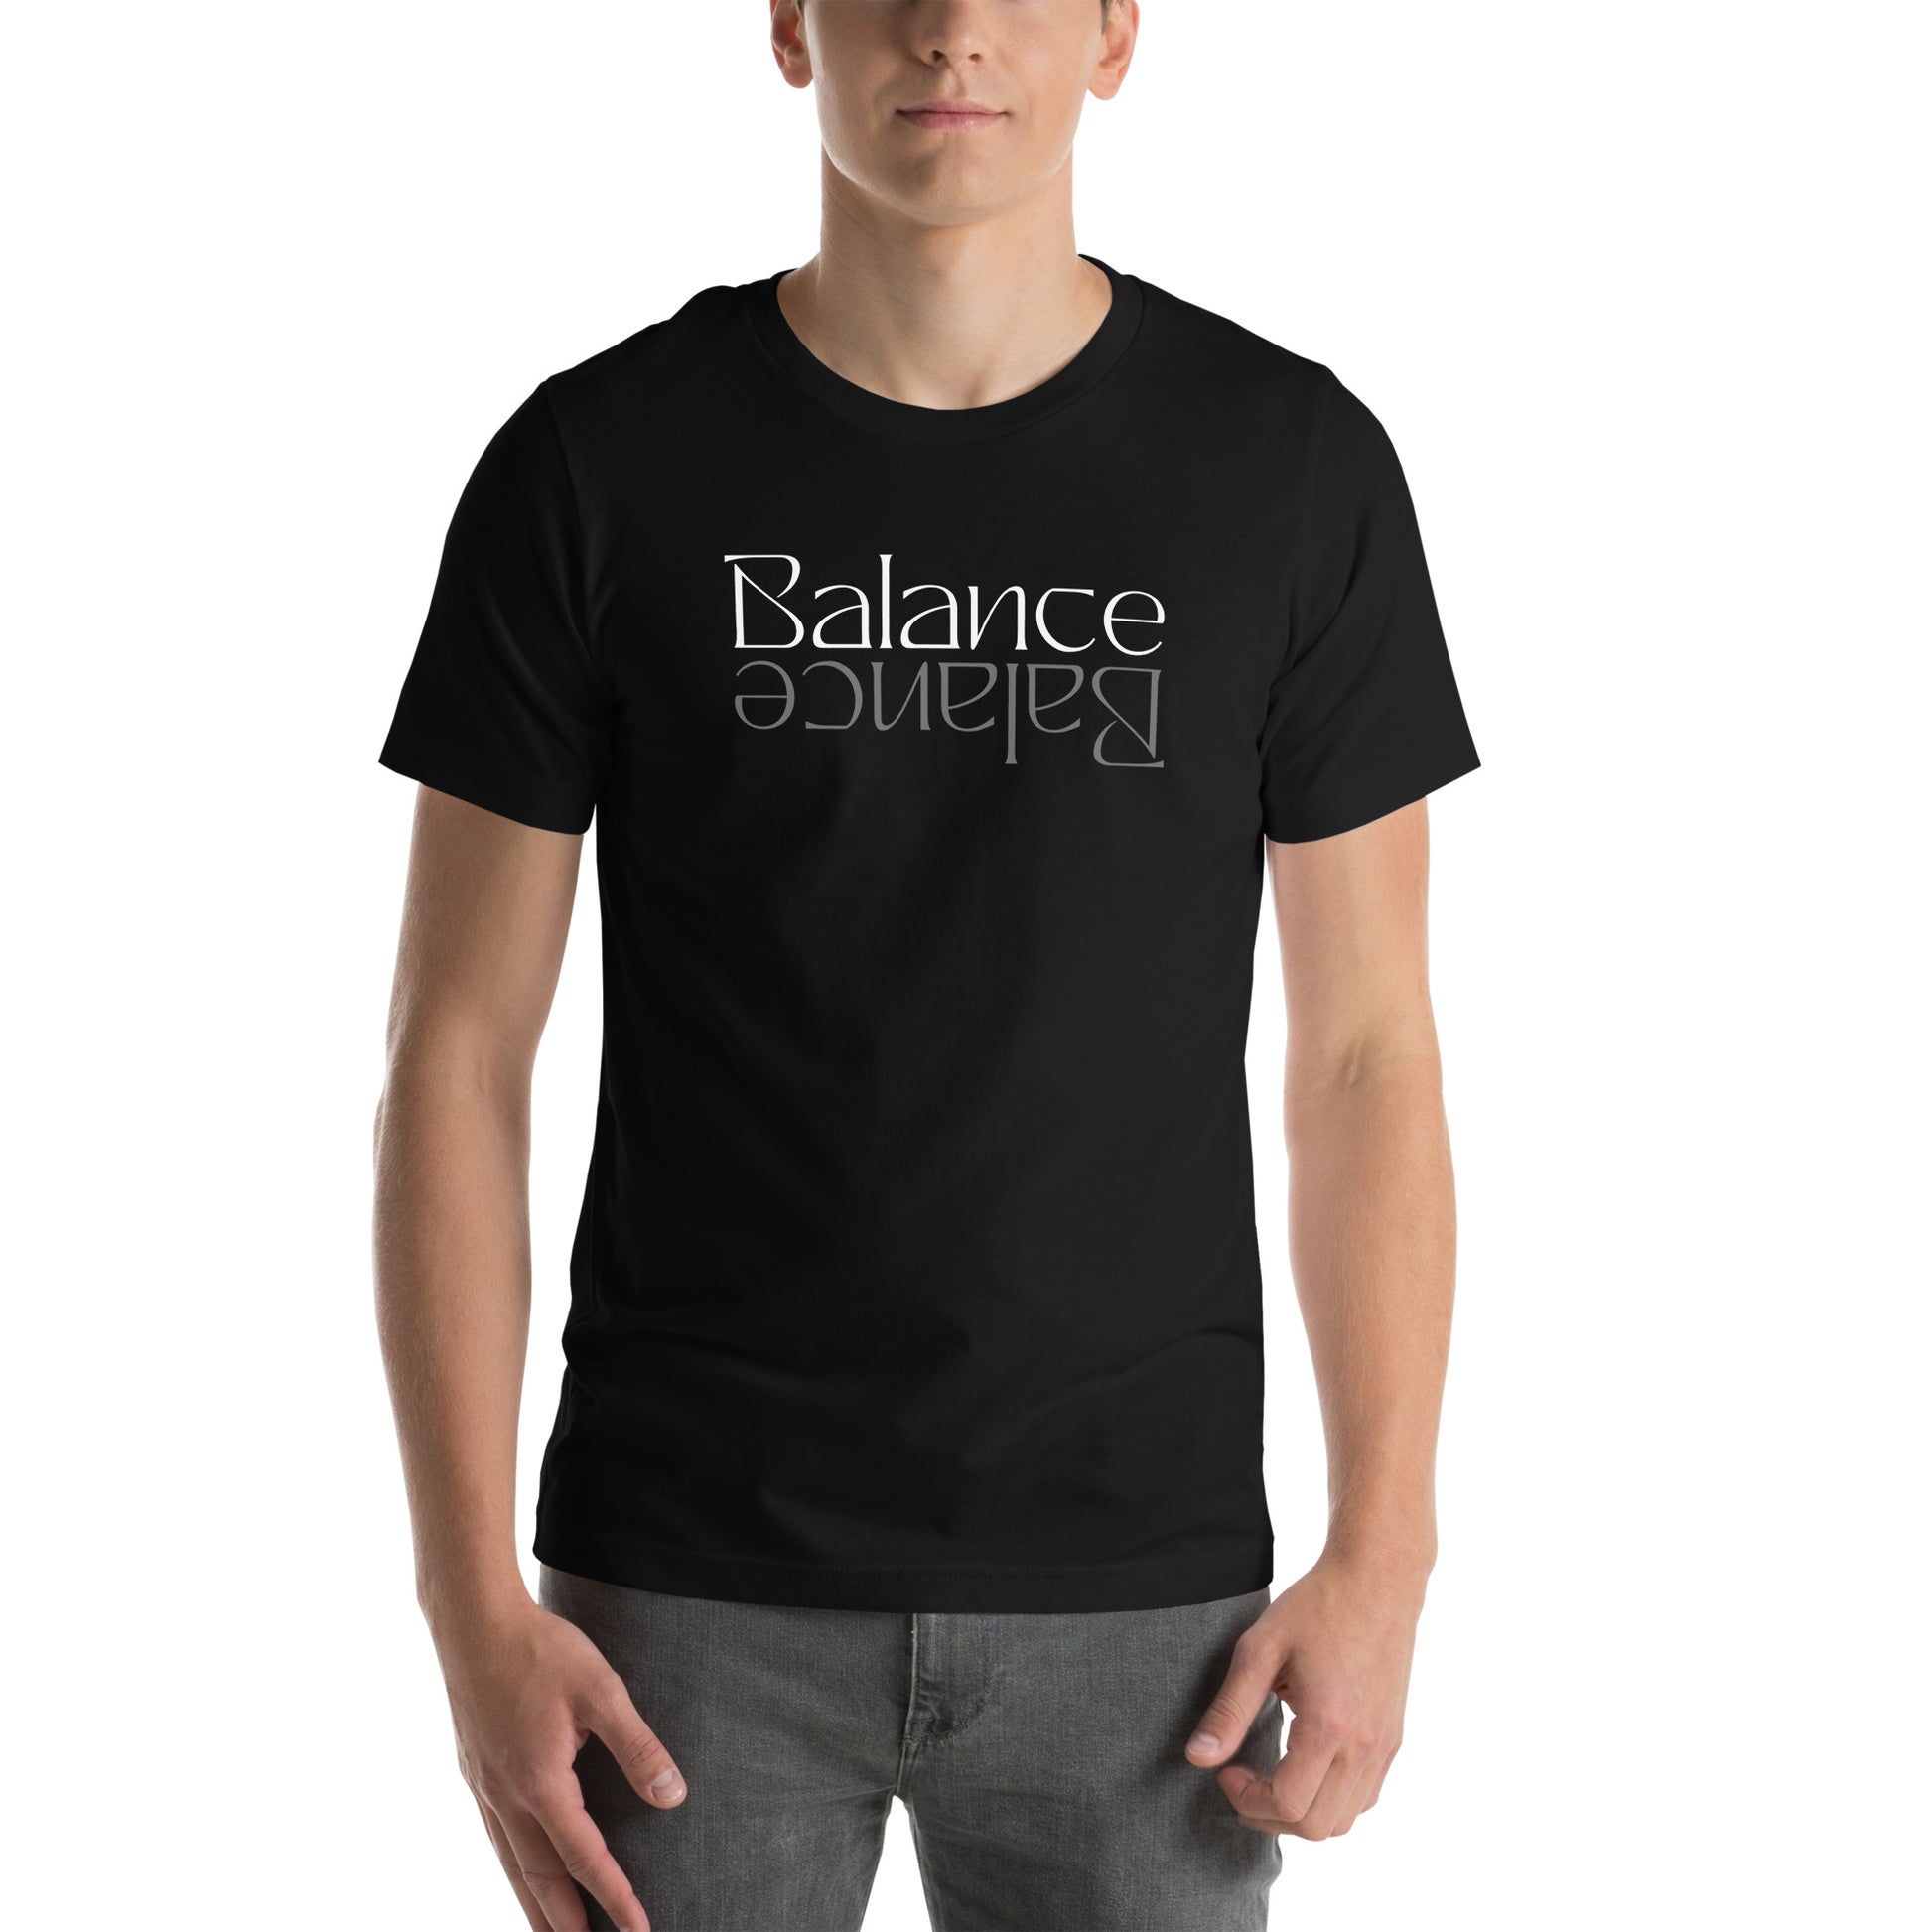 Balance - Designed by Zeeshan Waheed - izeeshanwaheed